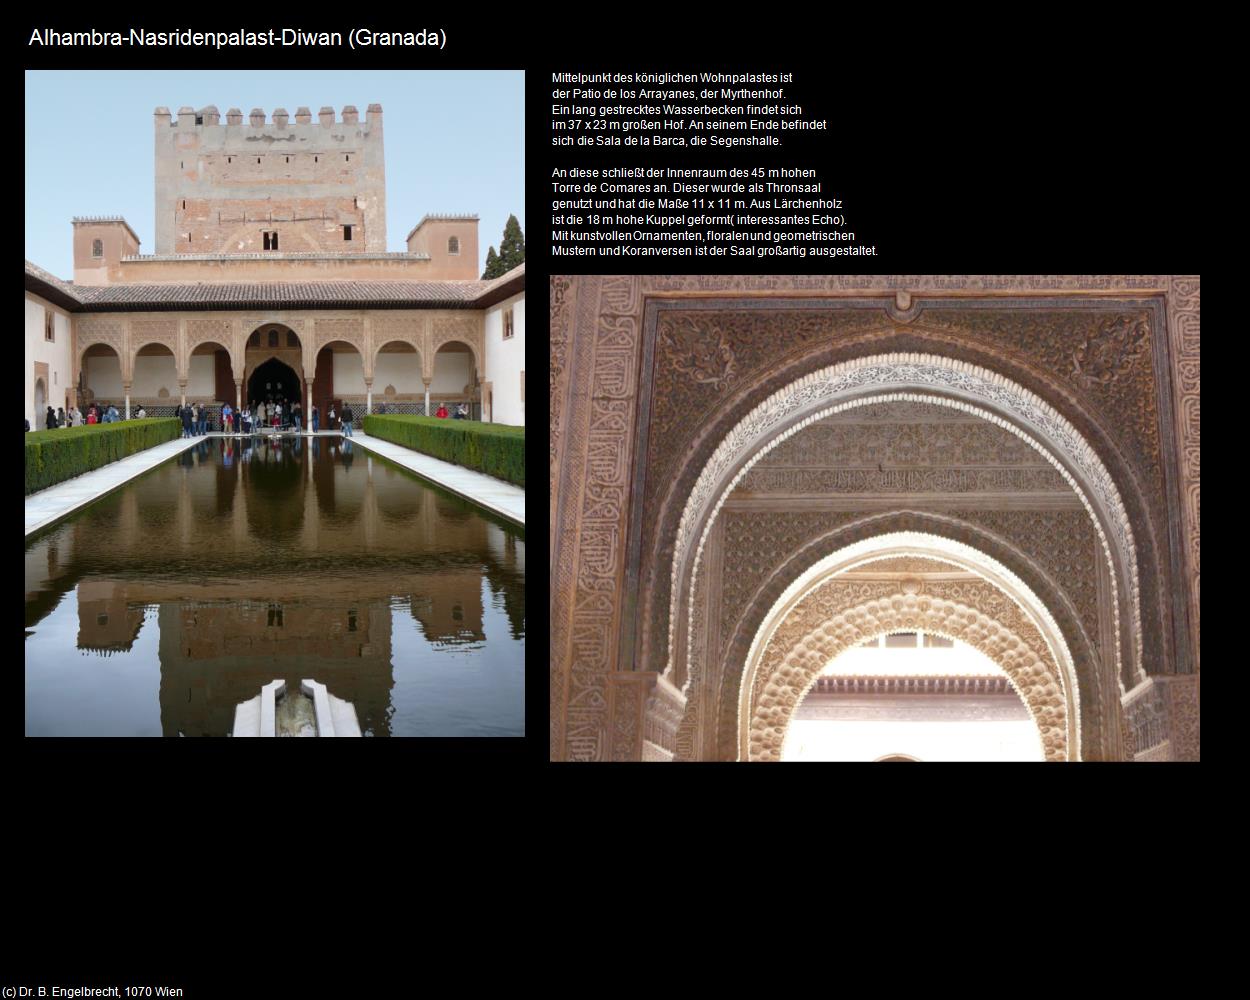 Alhambra-Nasridenpalast-Diwan (Granada) in ANDALUSIEN